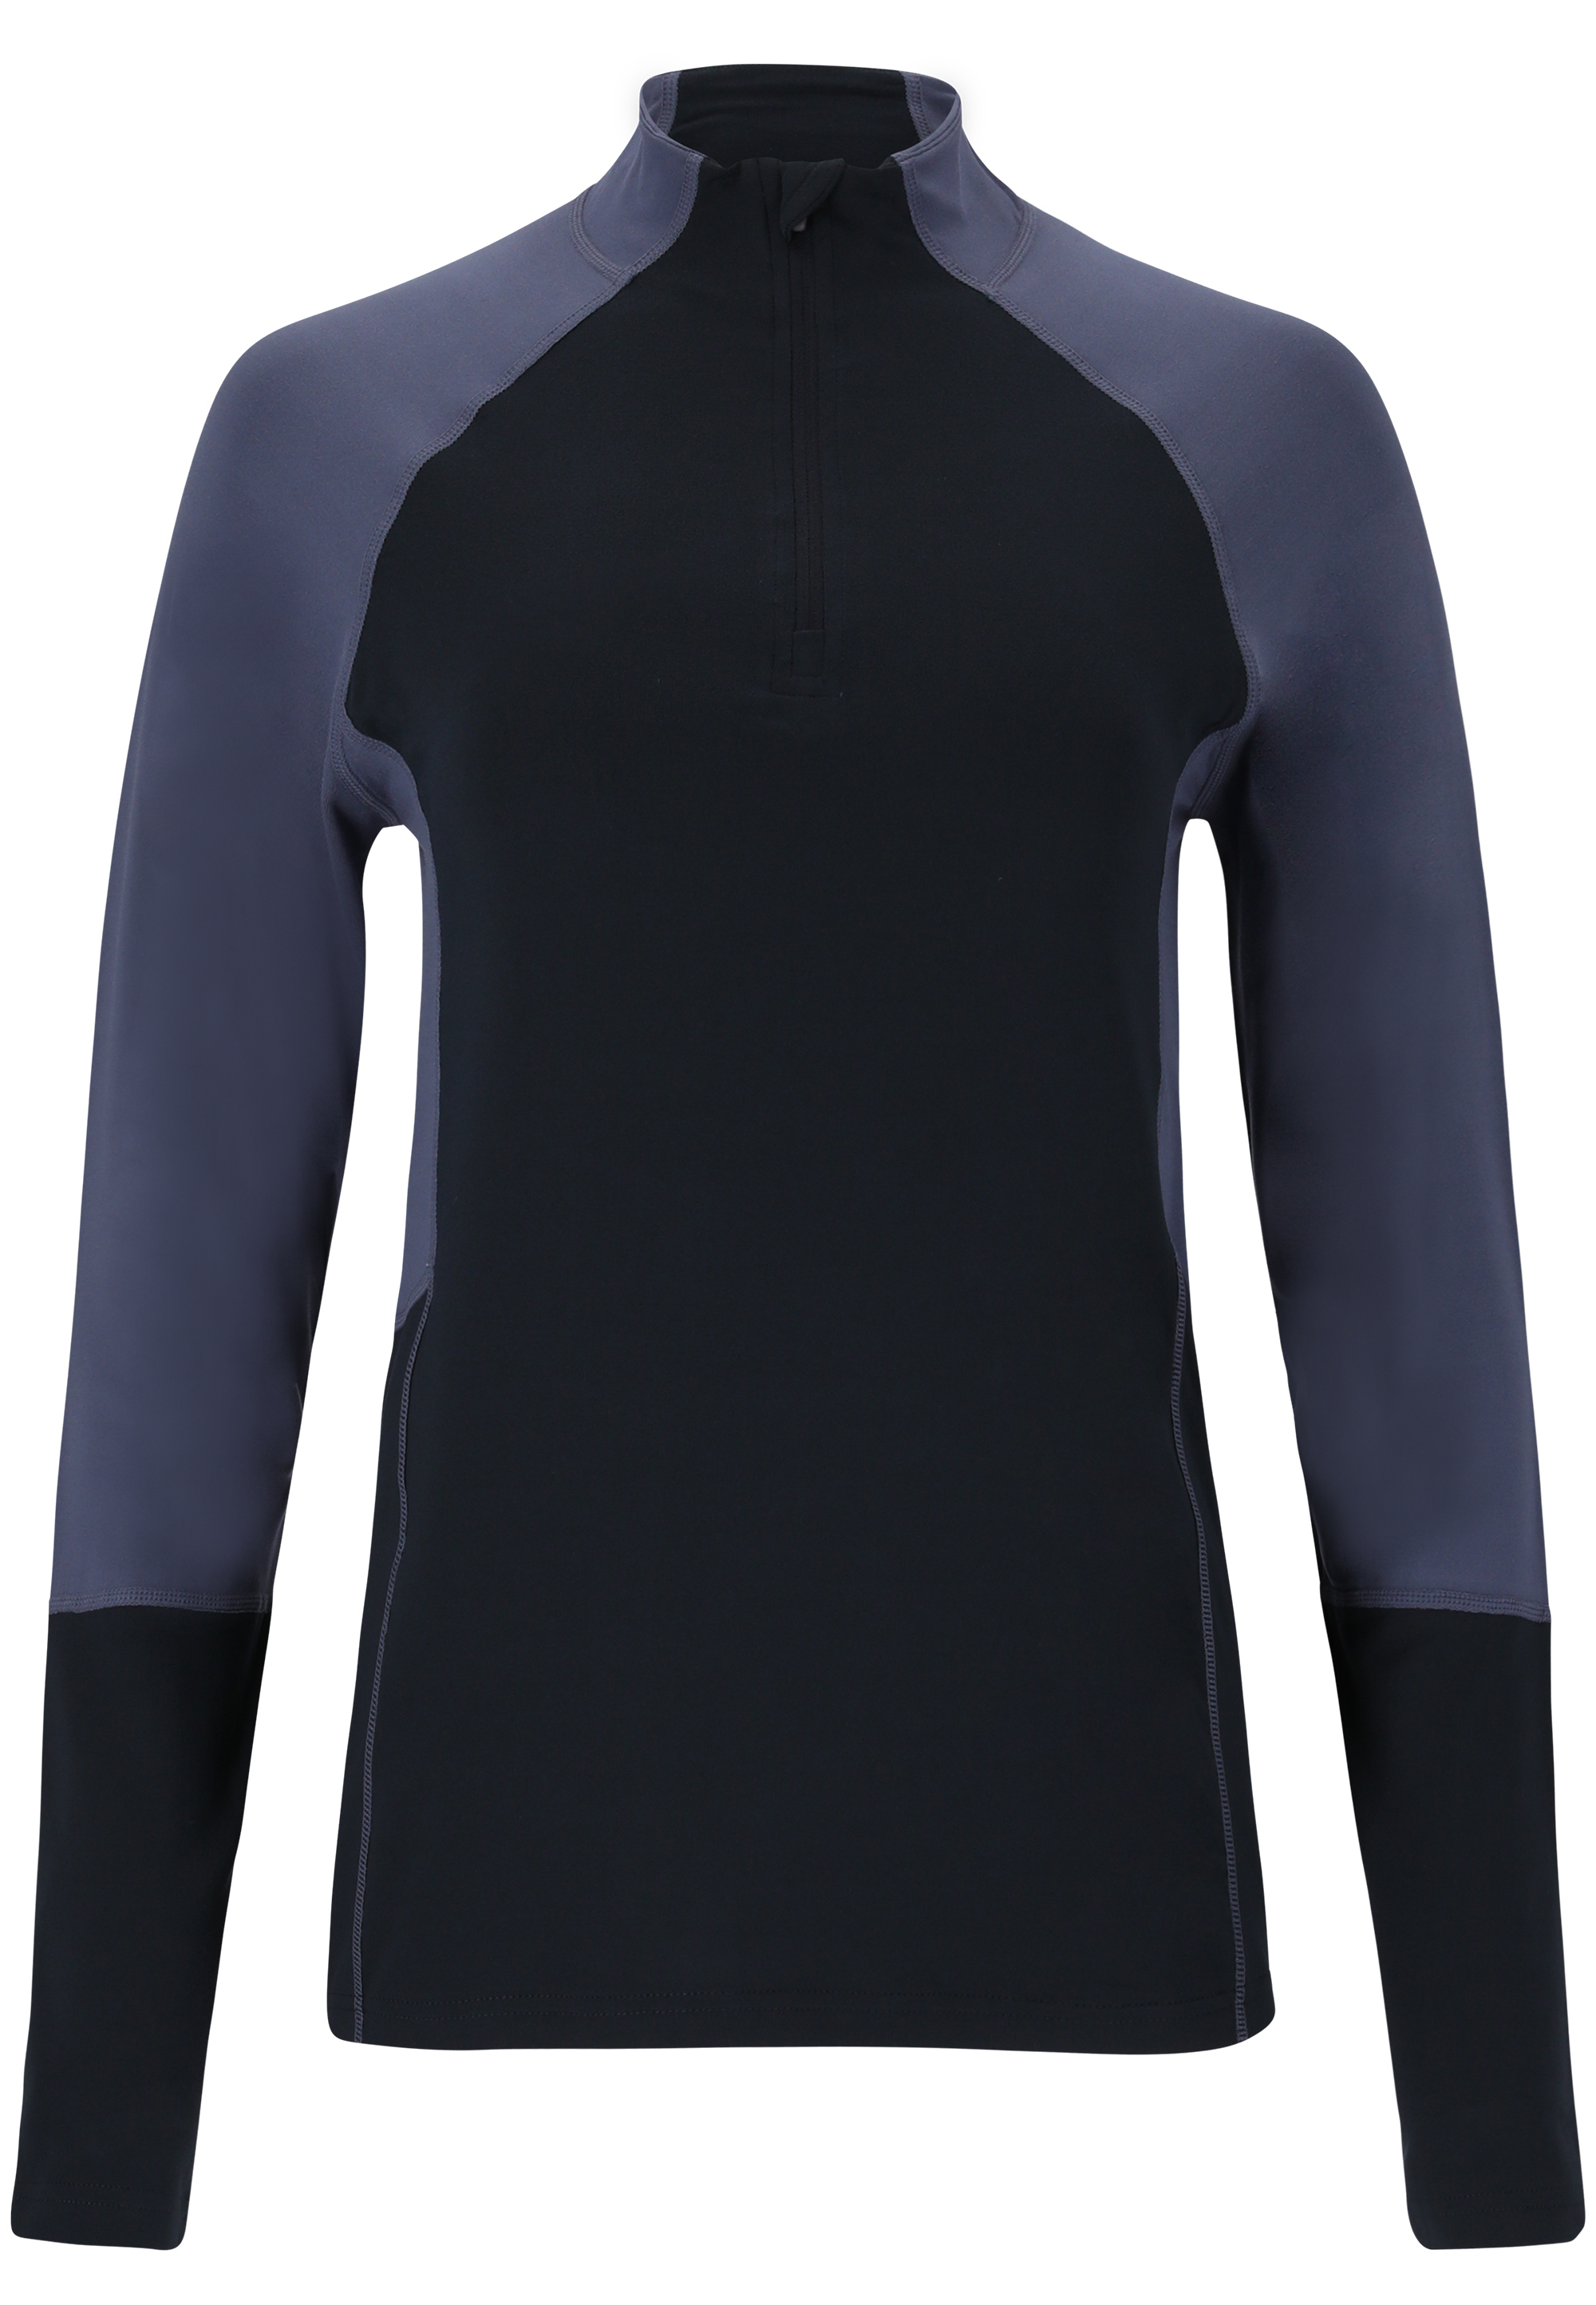 Рубашка Endurance Abbye, цвет 2101 Dark Sapphire шорты endurance grovent цвет 2101 dark sapphire